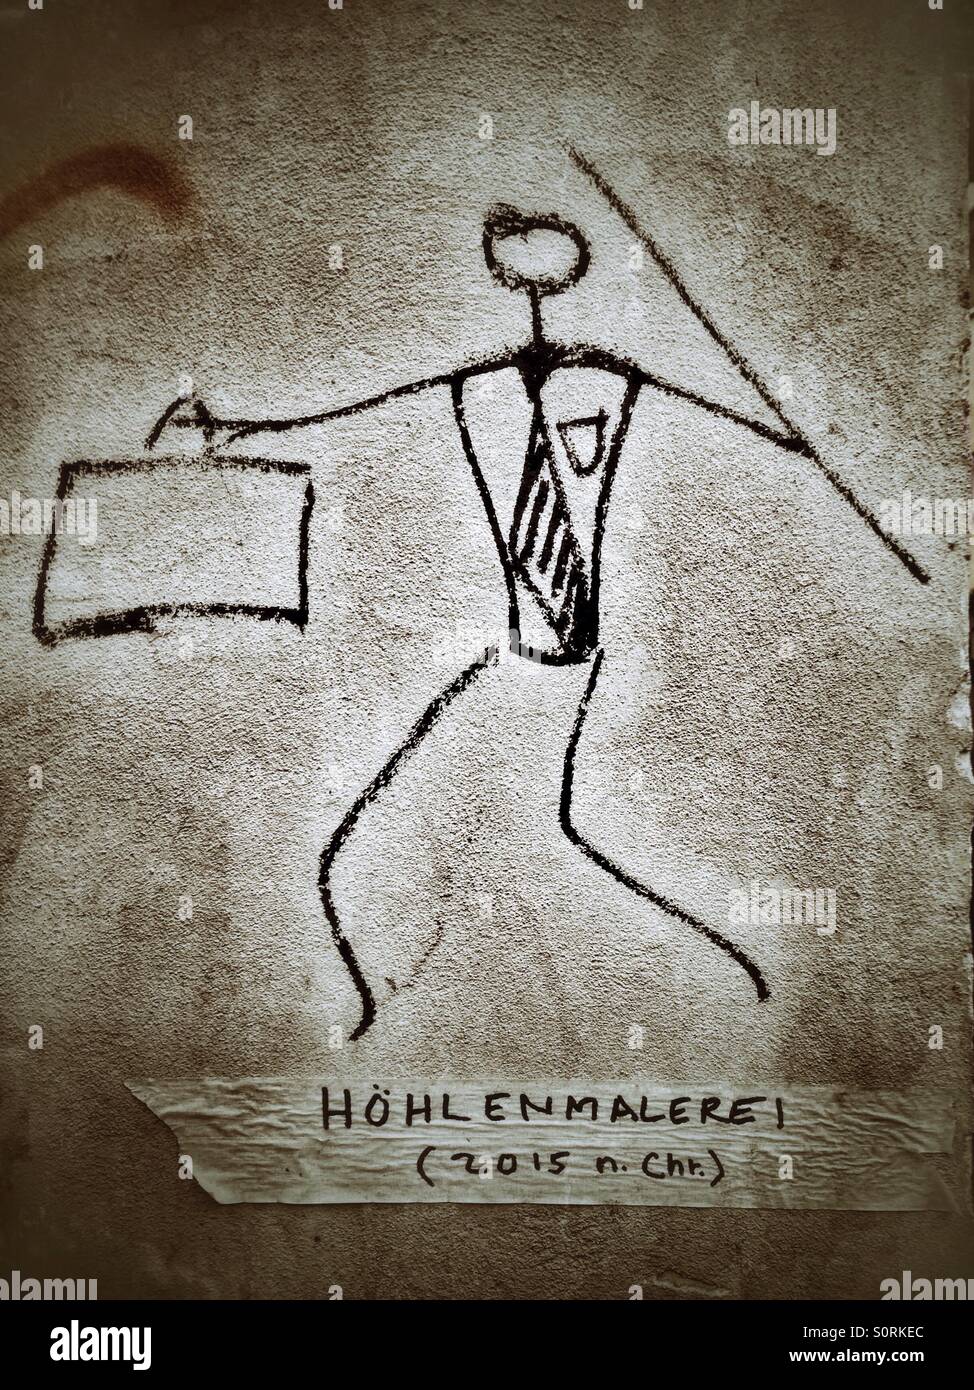 Ein Graffiti von einer modernen Höhlenmenschen mit Aktenkoffer und Speer, deutsche Untertitel liest: Höhle, Malerei (2015 n. Chr.) Stockfoto